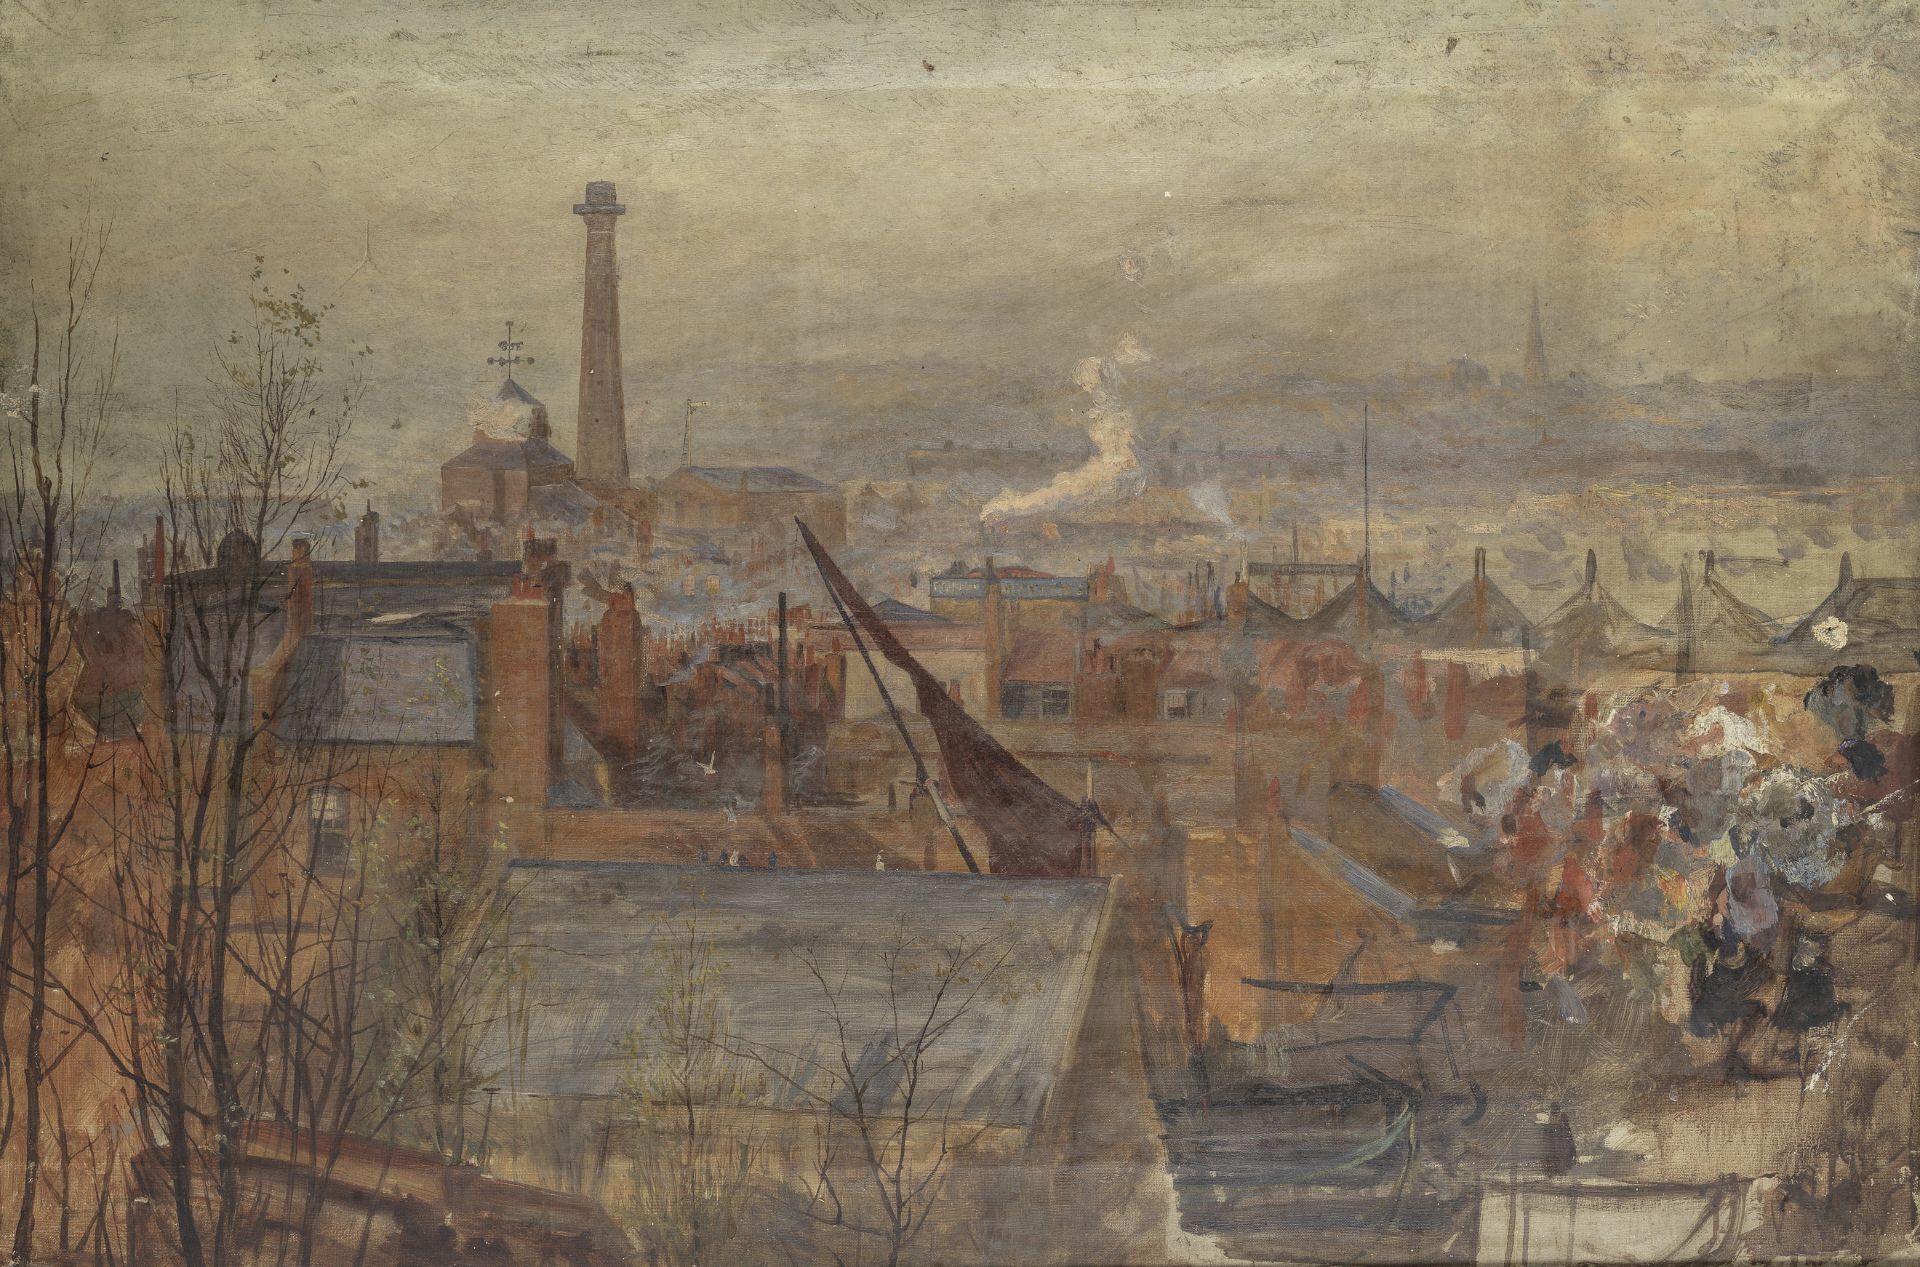 William Lionel Wyllie, R.A. (British, 1851-1931) Beckton Gas Works, an unfinished work